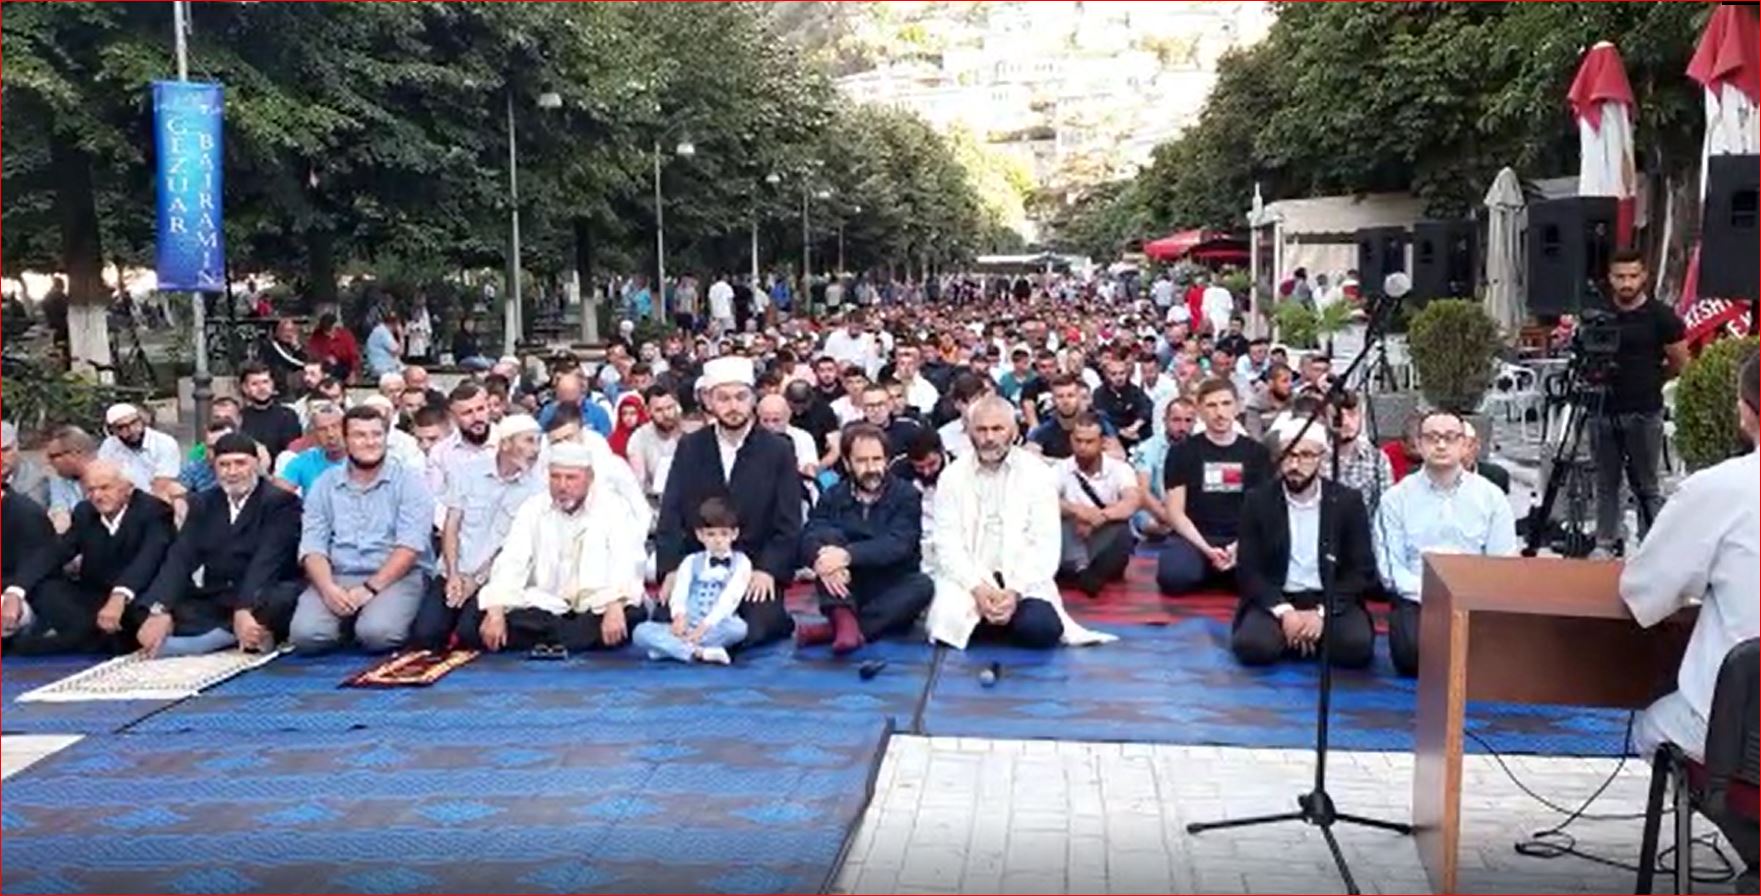 Sot festohet Kurban Bajrami, mijëra besimtarë falin namazin